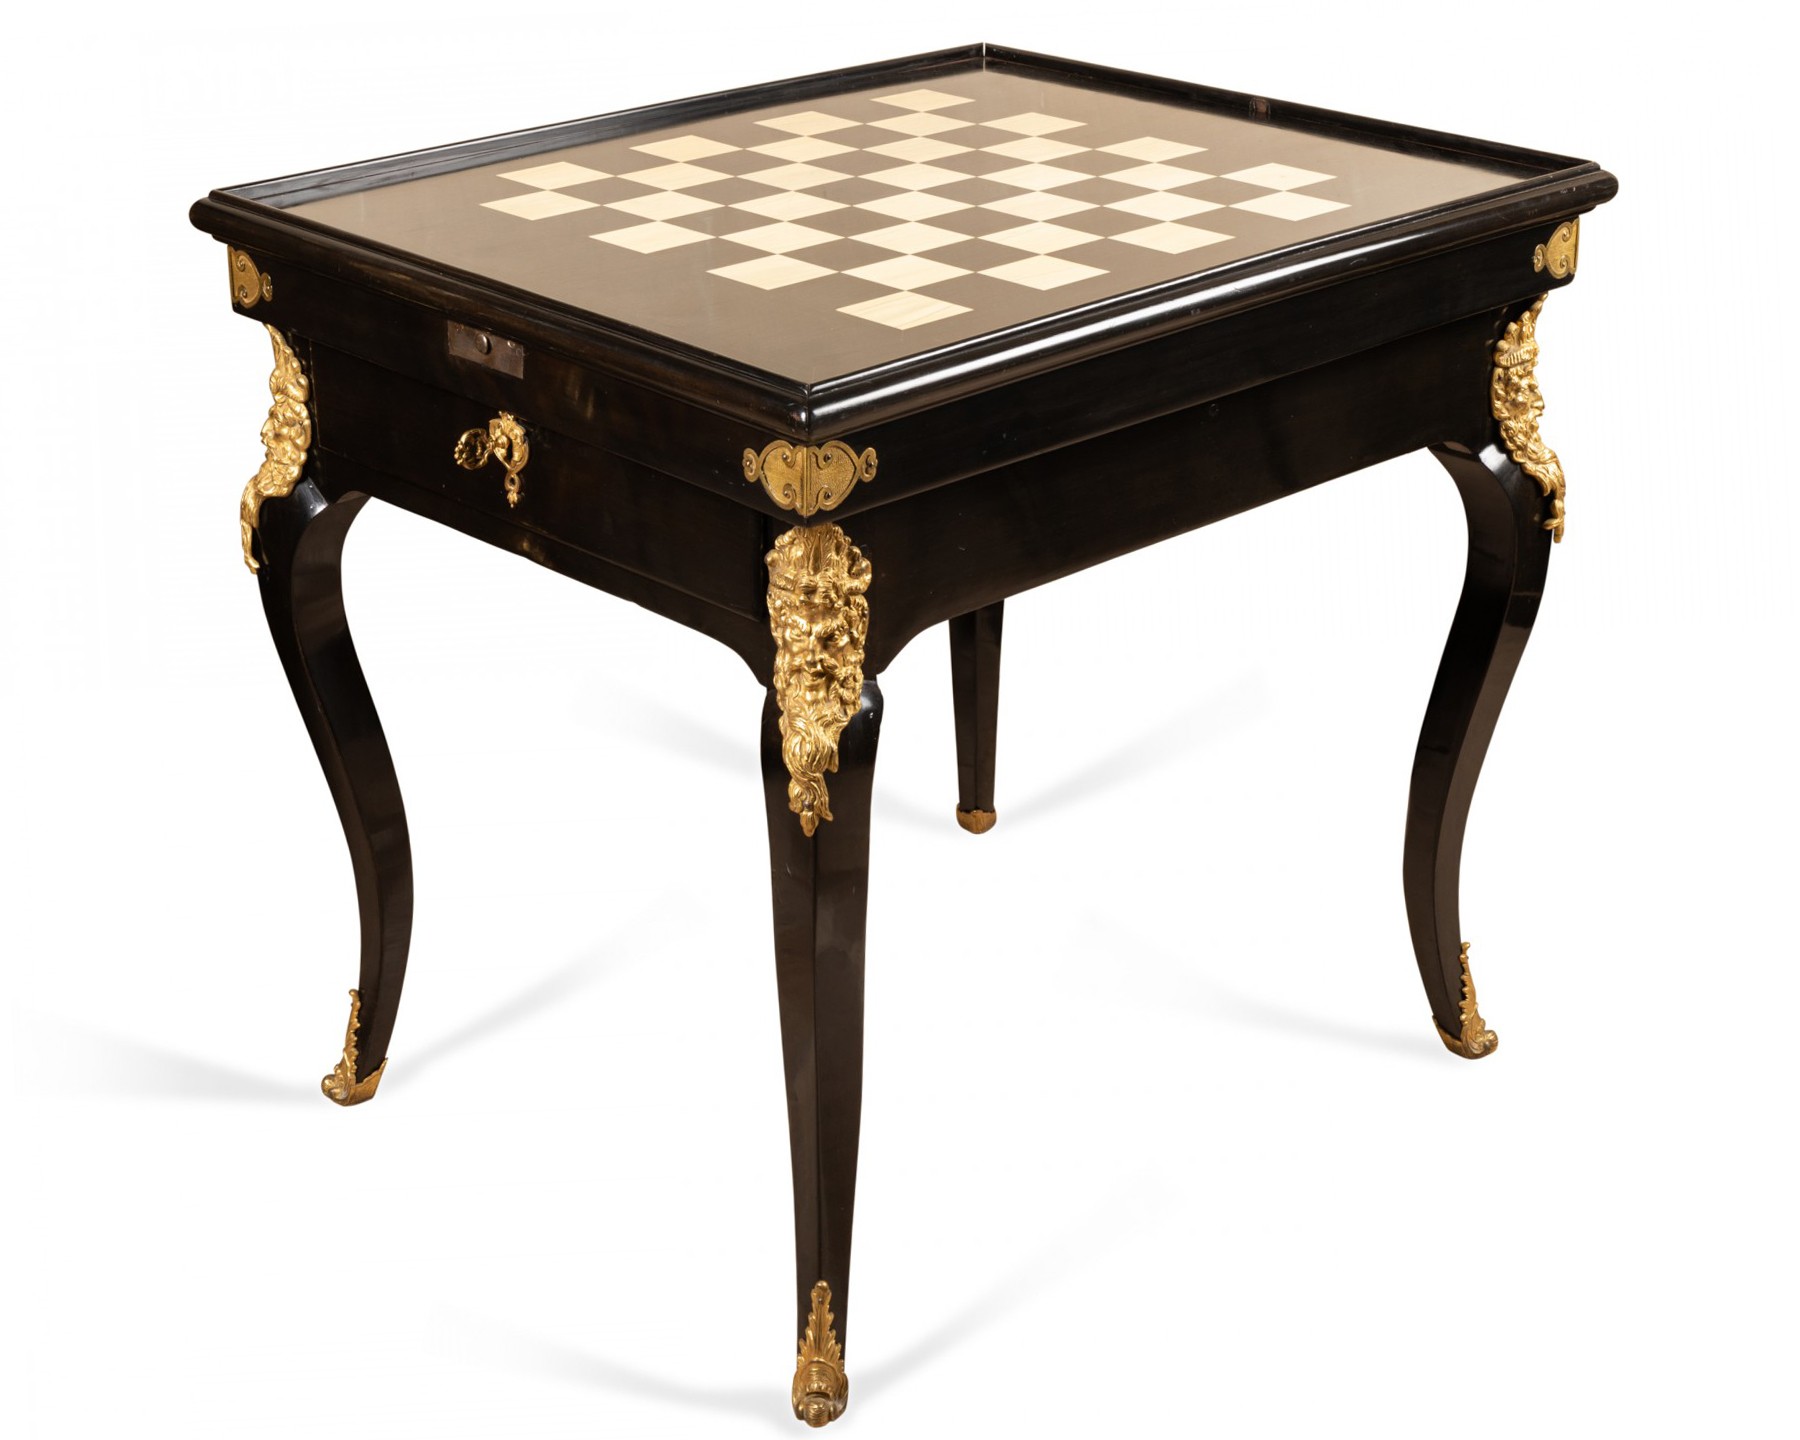 Table à jeux, tric-trac, échecs époque Régence - XVIIIe siècle - N.93405